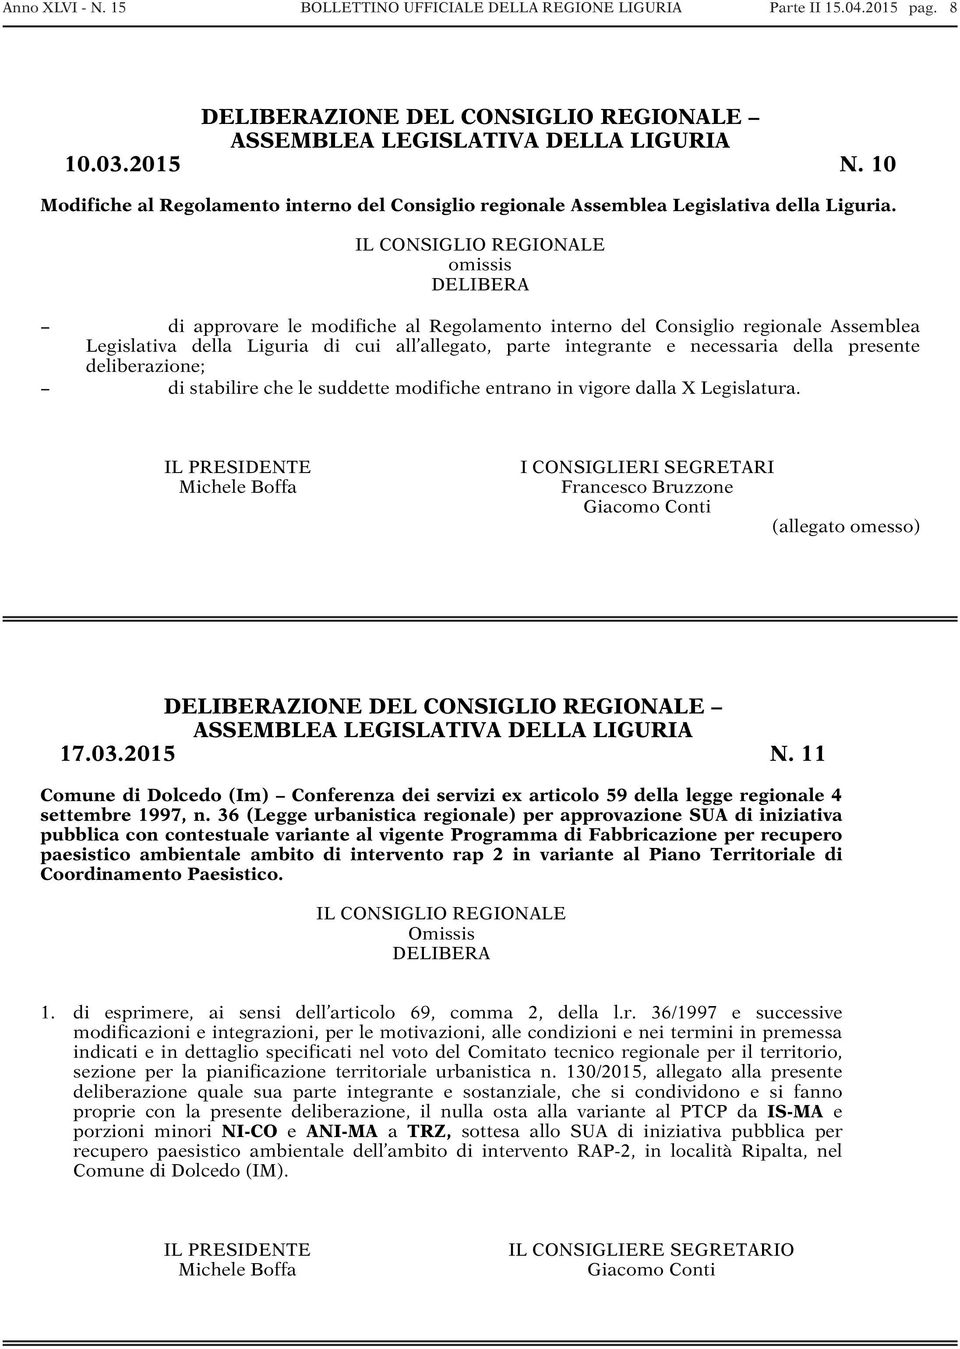 IL CONSIGLIO REGIONALE omissis DELIBERA di approvare le modifiche al Regolamento interno del Consiglio regionale Assemblea Legislativa della Liguria di cui all allegato, parte integrante e necessaria